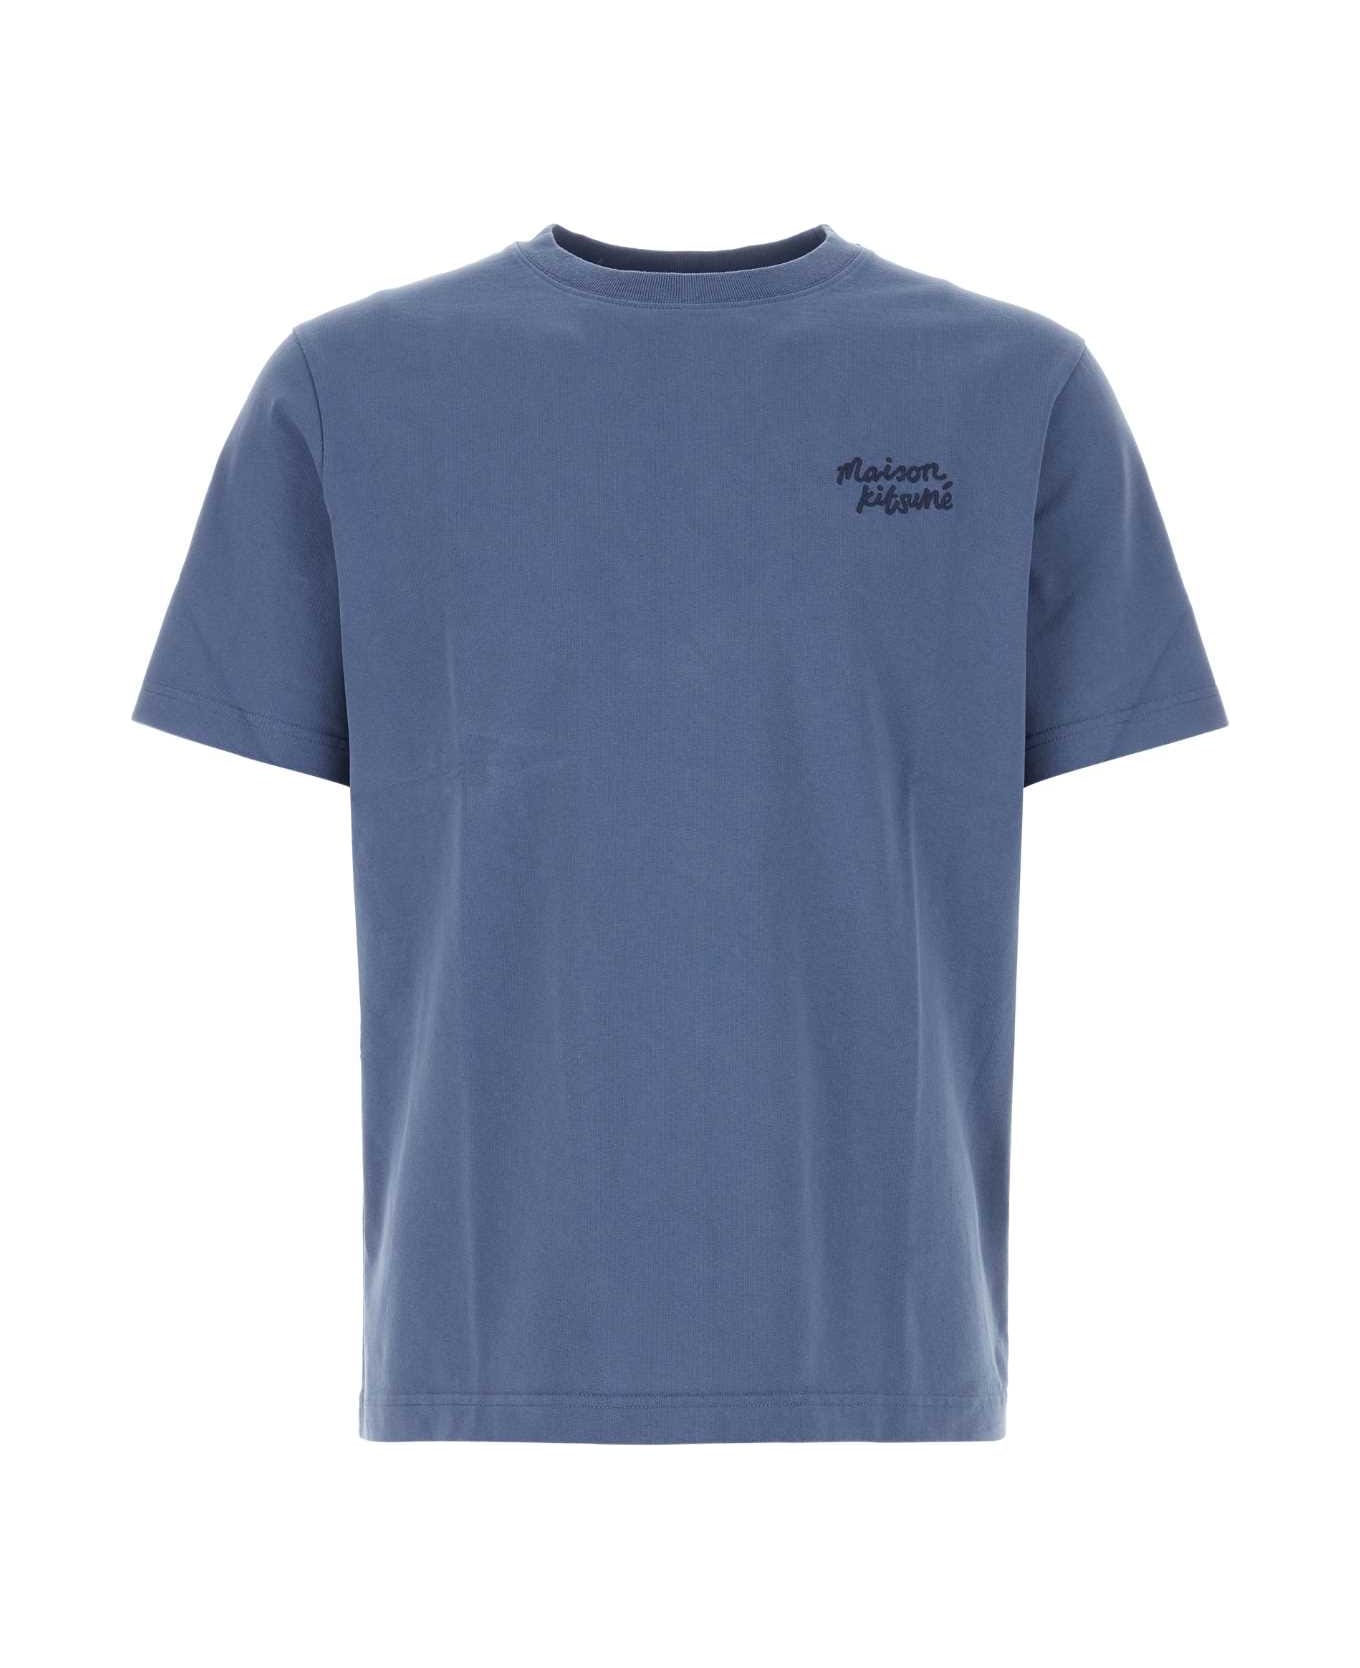 Maison Kitsuné Air Force Blue Cotton T-shirt - STORMBLUE